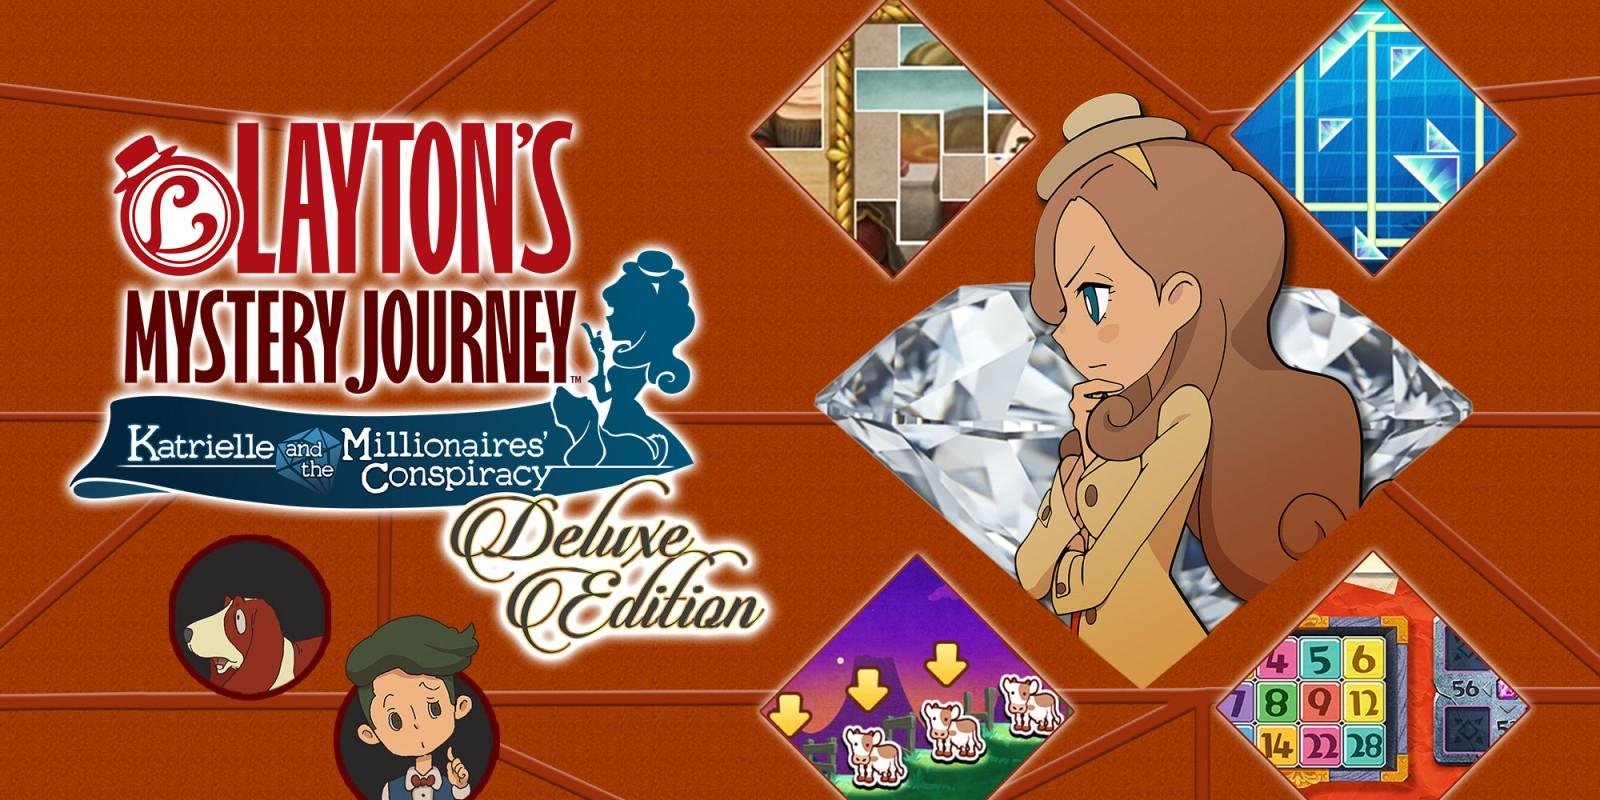 Un nuovo video per Layton’s Mystery Journey: Katrielle e il complotto dei milionari